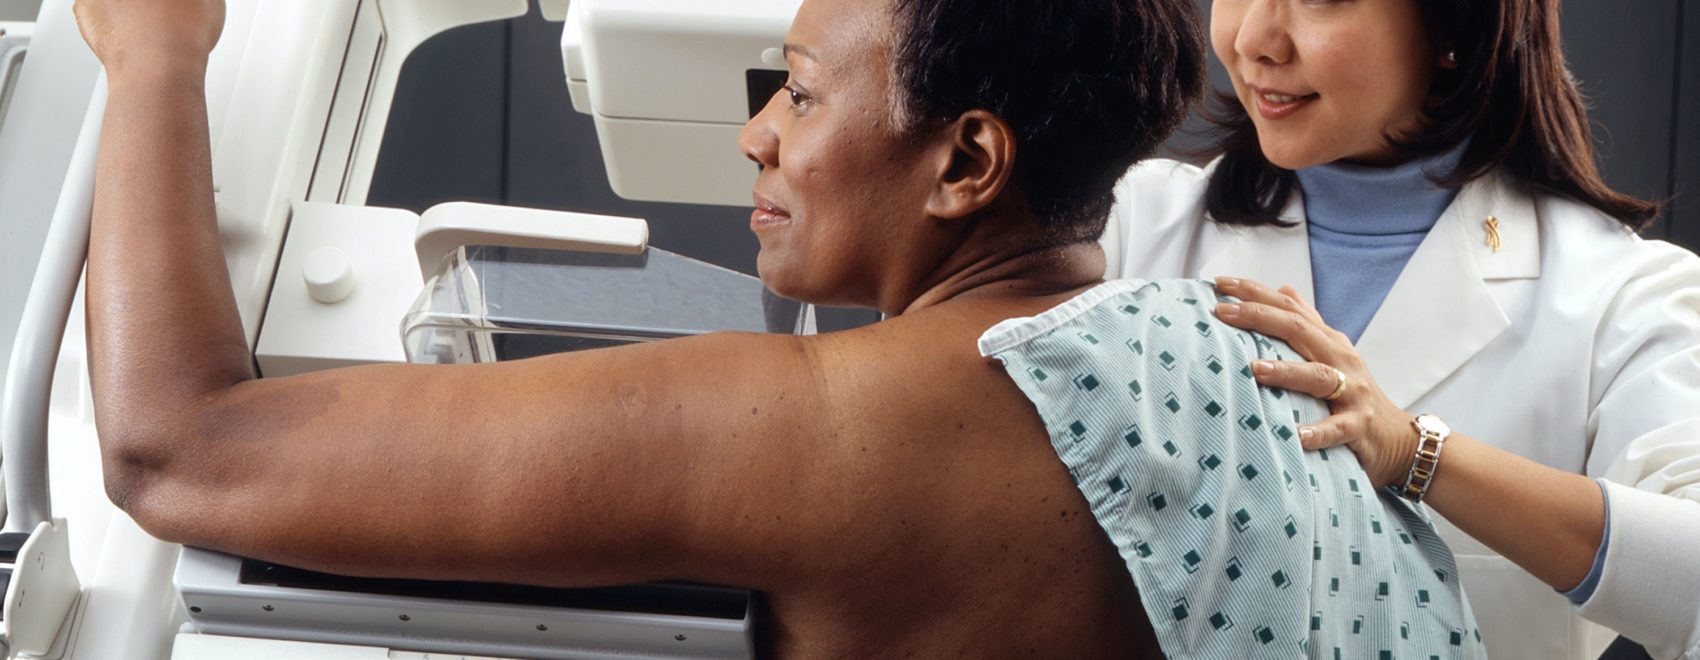 nurse helping patient with mammogram machine